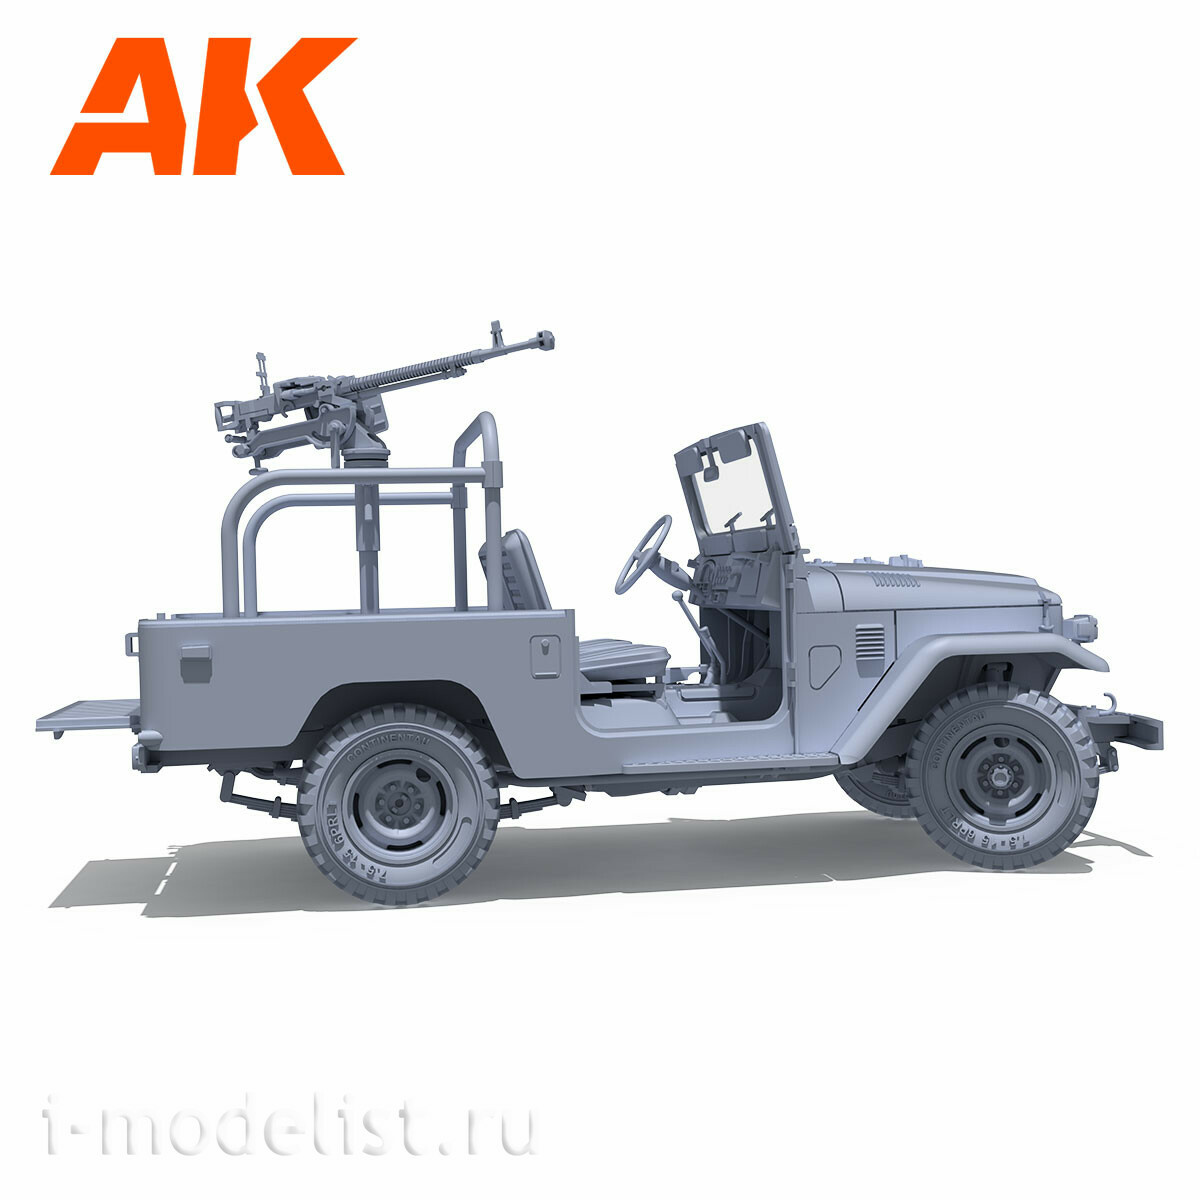 AK35002 AK Interactive 1/35 SUV FJ43 PICKUP with DShKM